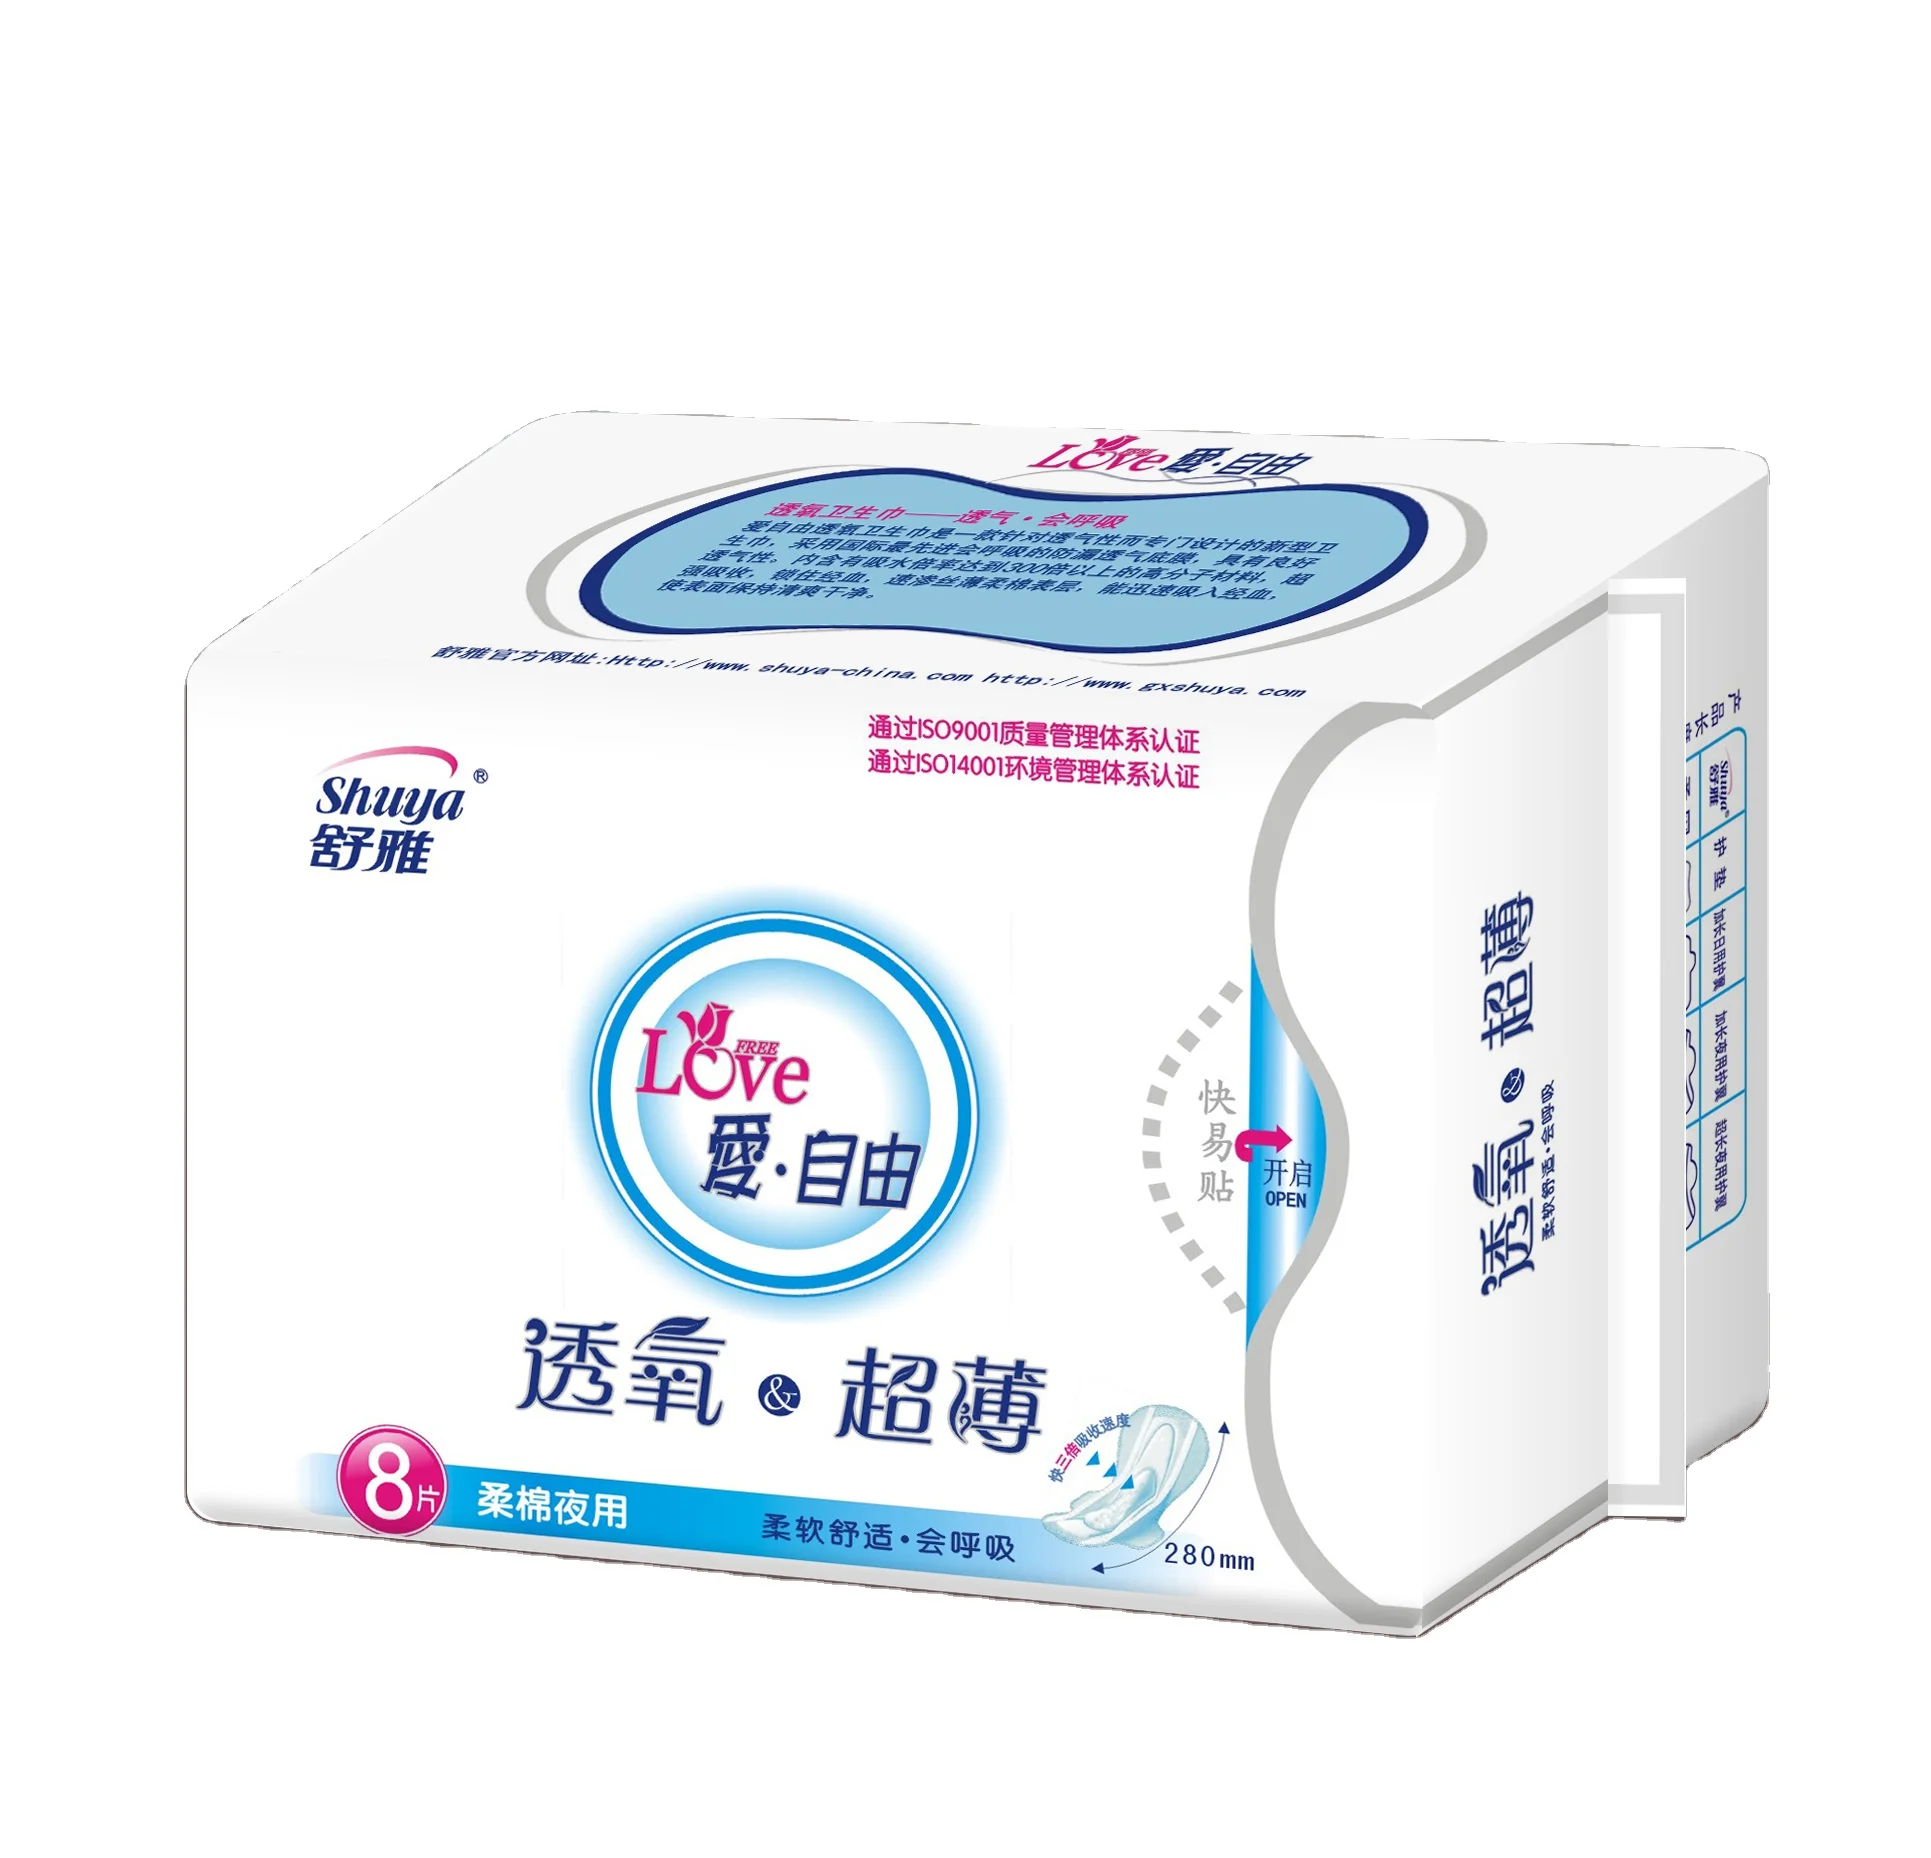 3x20 Pzas TianDe 61915 Salud Femenina: Protección Diaria Con Aniones Paquete de Ahorro Sanitarias Herbales FemeninasFrescura de Jade Con Aniones